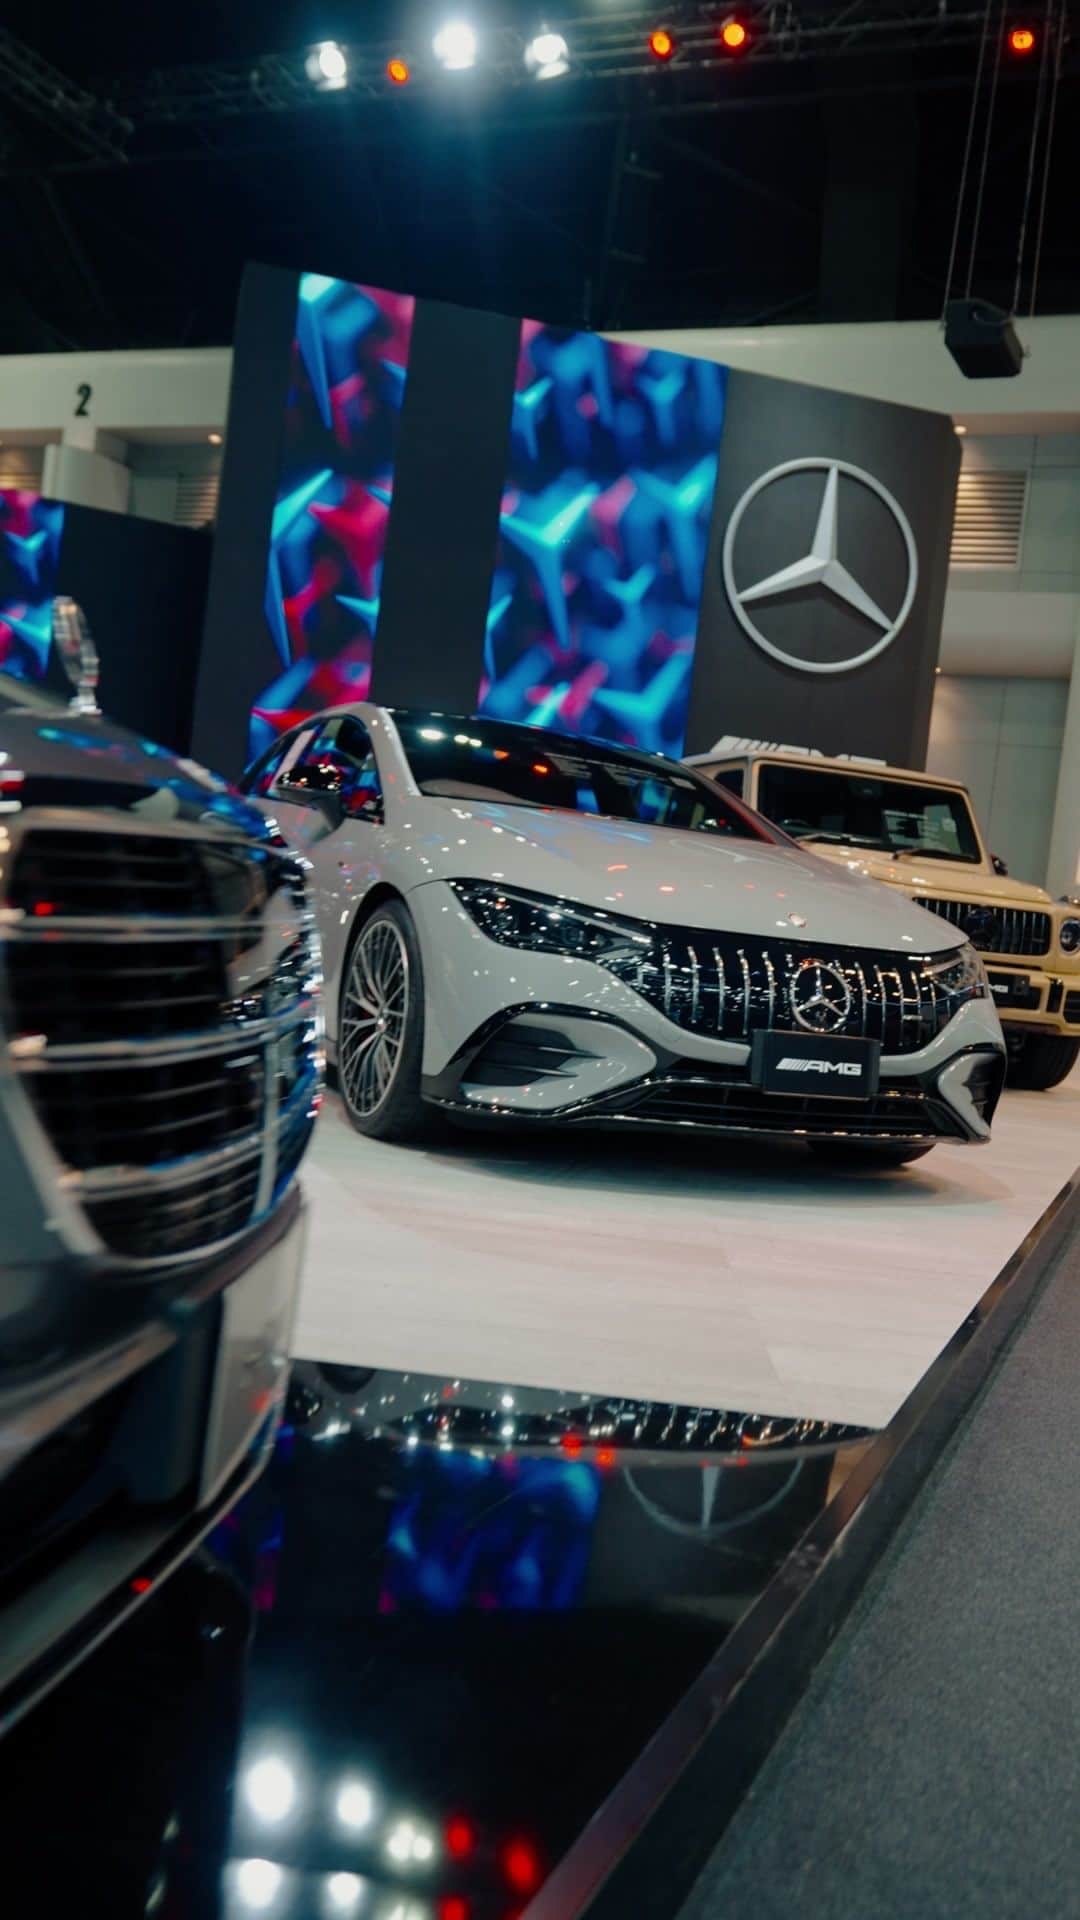 Mercedes-Benz Thailandのインスタグラム：「Mercedes-Benz พร้อมแล้วที่จะพาคุณก้าวสู่ความเป็นผู้นำแห่งโลกยานยนต์ ให้ทุกคนได้สัมผัสในงาน Motor Expo 2023 💫🪐  เตรียมตัวให้พร้อมเพราะครั้งนี้ Mercedes-Benz จะมอบประสบการณ์พิเศษ ด้วยการลดระดับ(บูธ) ให้เป็นระดับเดียวกันหมด เพื่อให้คุณขยับเข้าใกล้ความสำเร็จได้มากขึ้น มาผสมผสานจิตวิญญาณของผู้นำแห่งโลกยานยนต์ไปกับเรา และตื่นตาตื่นใจไปกับโซนต่างๆ ที่นำรถไฮไลท์มาให้คุณได้สัมผัส  พบกันที่งาน Motor Expo 2023  🗓️ ตั้งแต่วันที่ 1 - 11 ธันวาคม 2566  📍 ณ อิมแพ็ค ชาเลนเจอร์ ฮอลล์ 1 เมืองทองธานี  #FUTUREFORALL #MotorExpo2023 #MercedesBenz #MercedesBenzThailand」